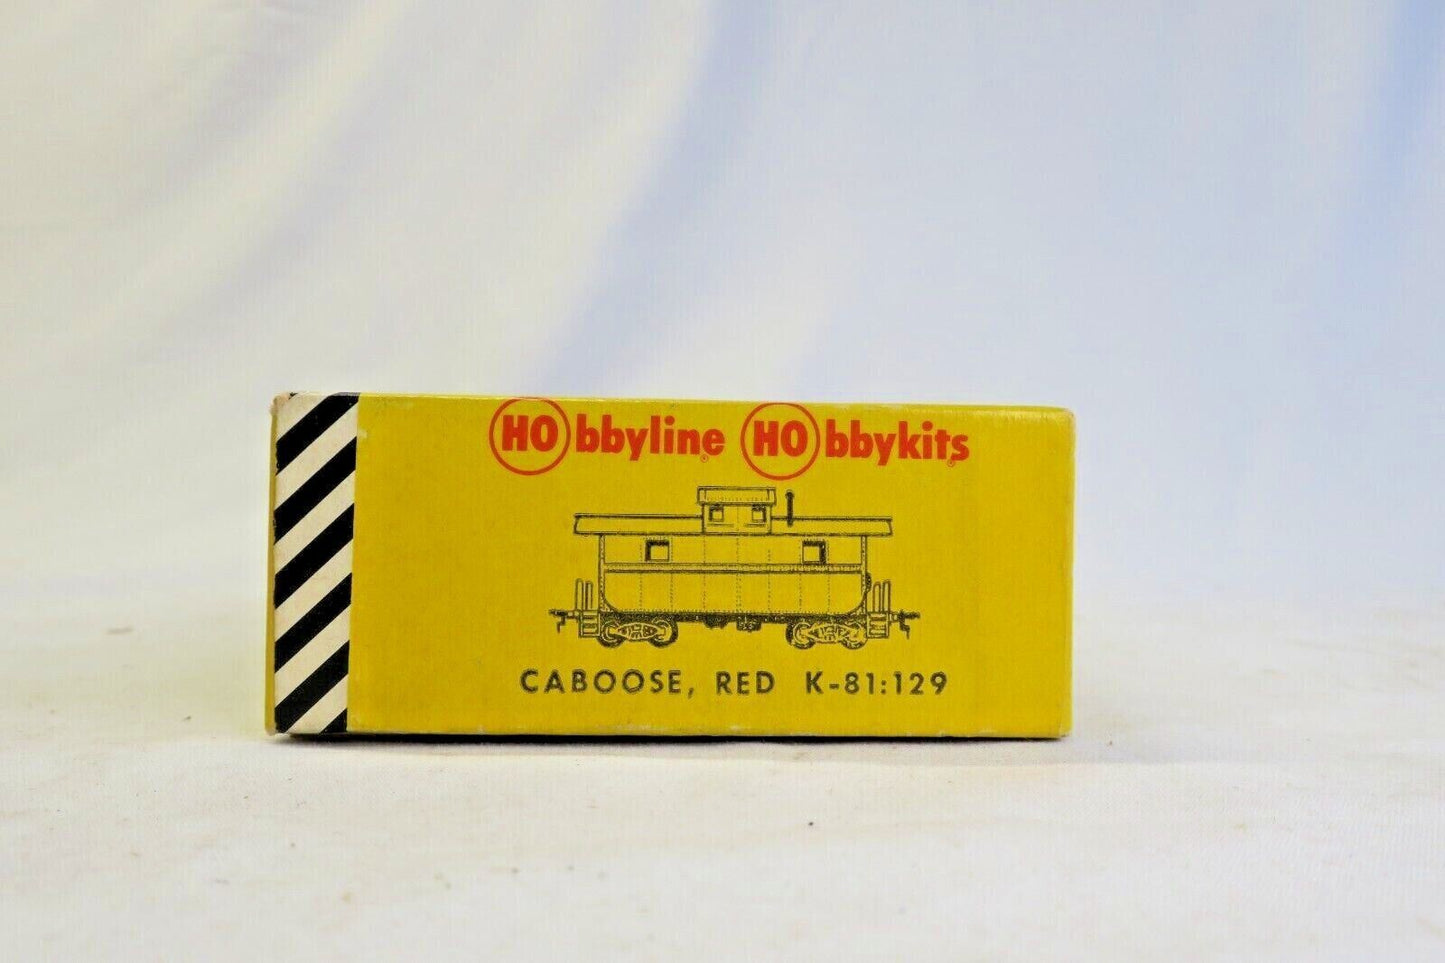 VINTAGE HOBBYLINE HOBBYKIT CABOOSE RED K-81:129 HO SCALE MODEL KIT IN BOX